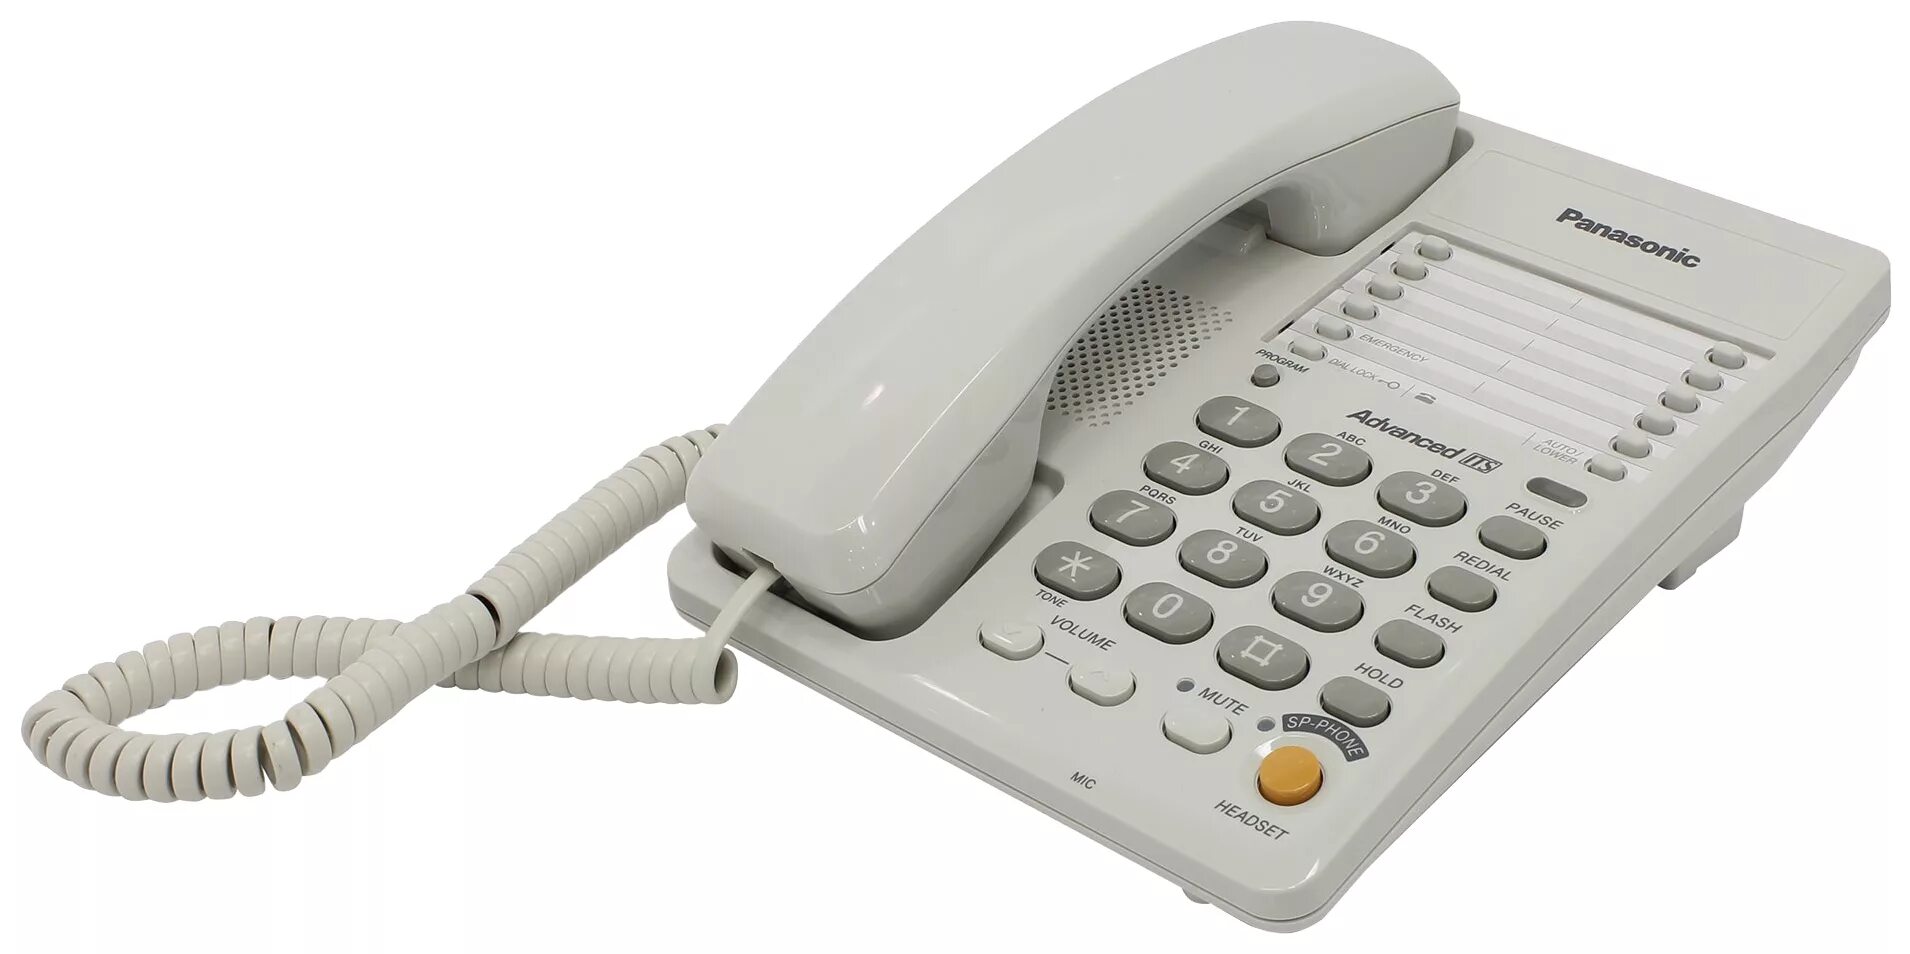 Стационарный телефон симферополь. Panasonic KX-ts2363. Panasonic KX-ts2365ruw (белый). Телефонный аппарат Panasonic KX-ts2365. Проводной телефон Panasonic KX-ts2363ruw, белый.